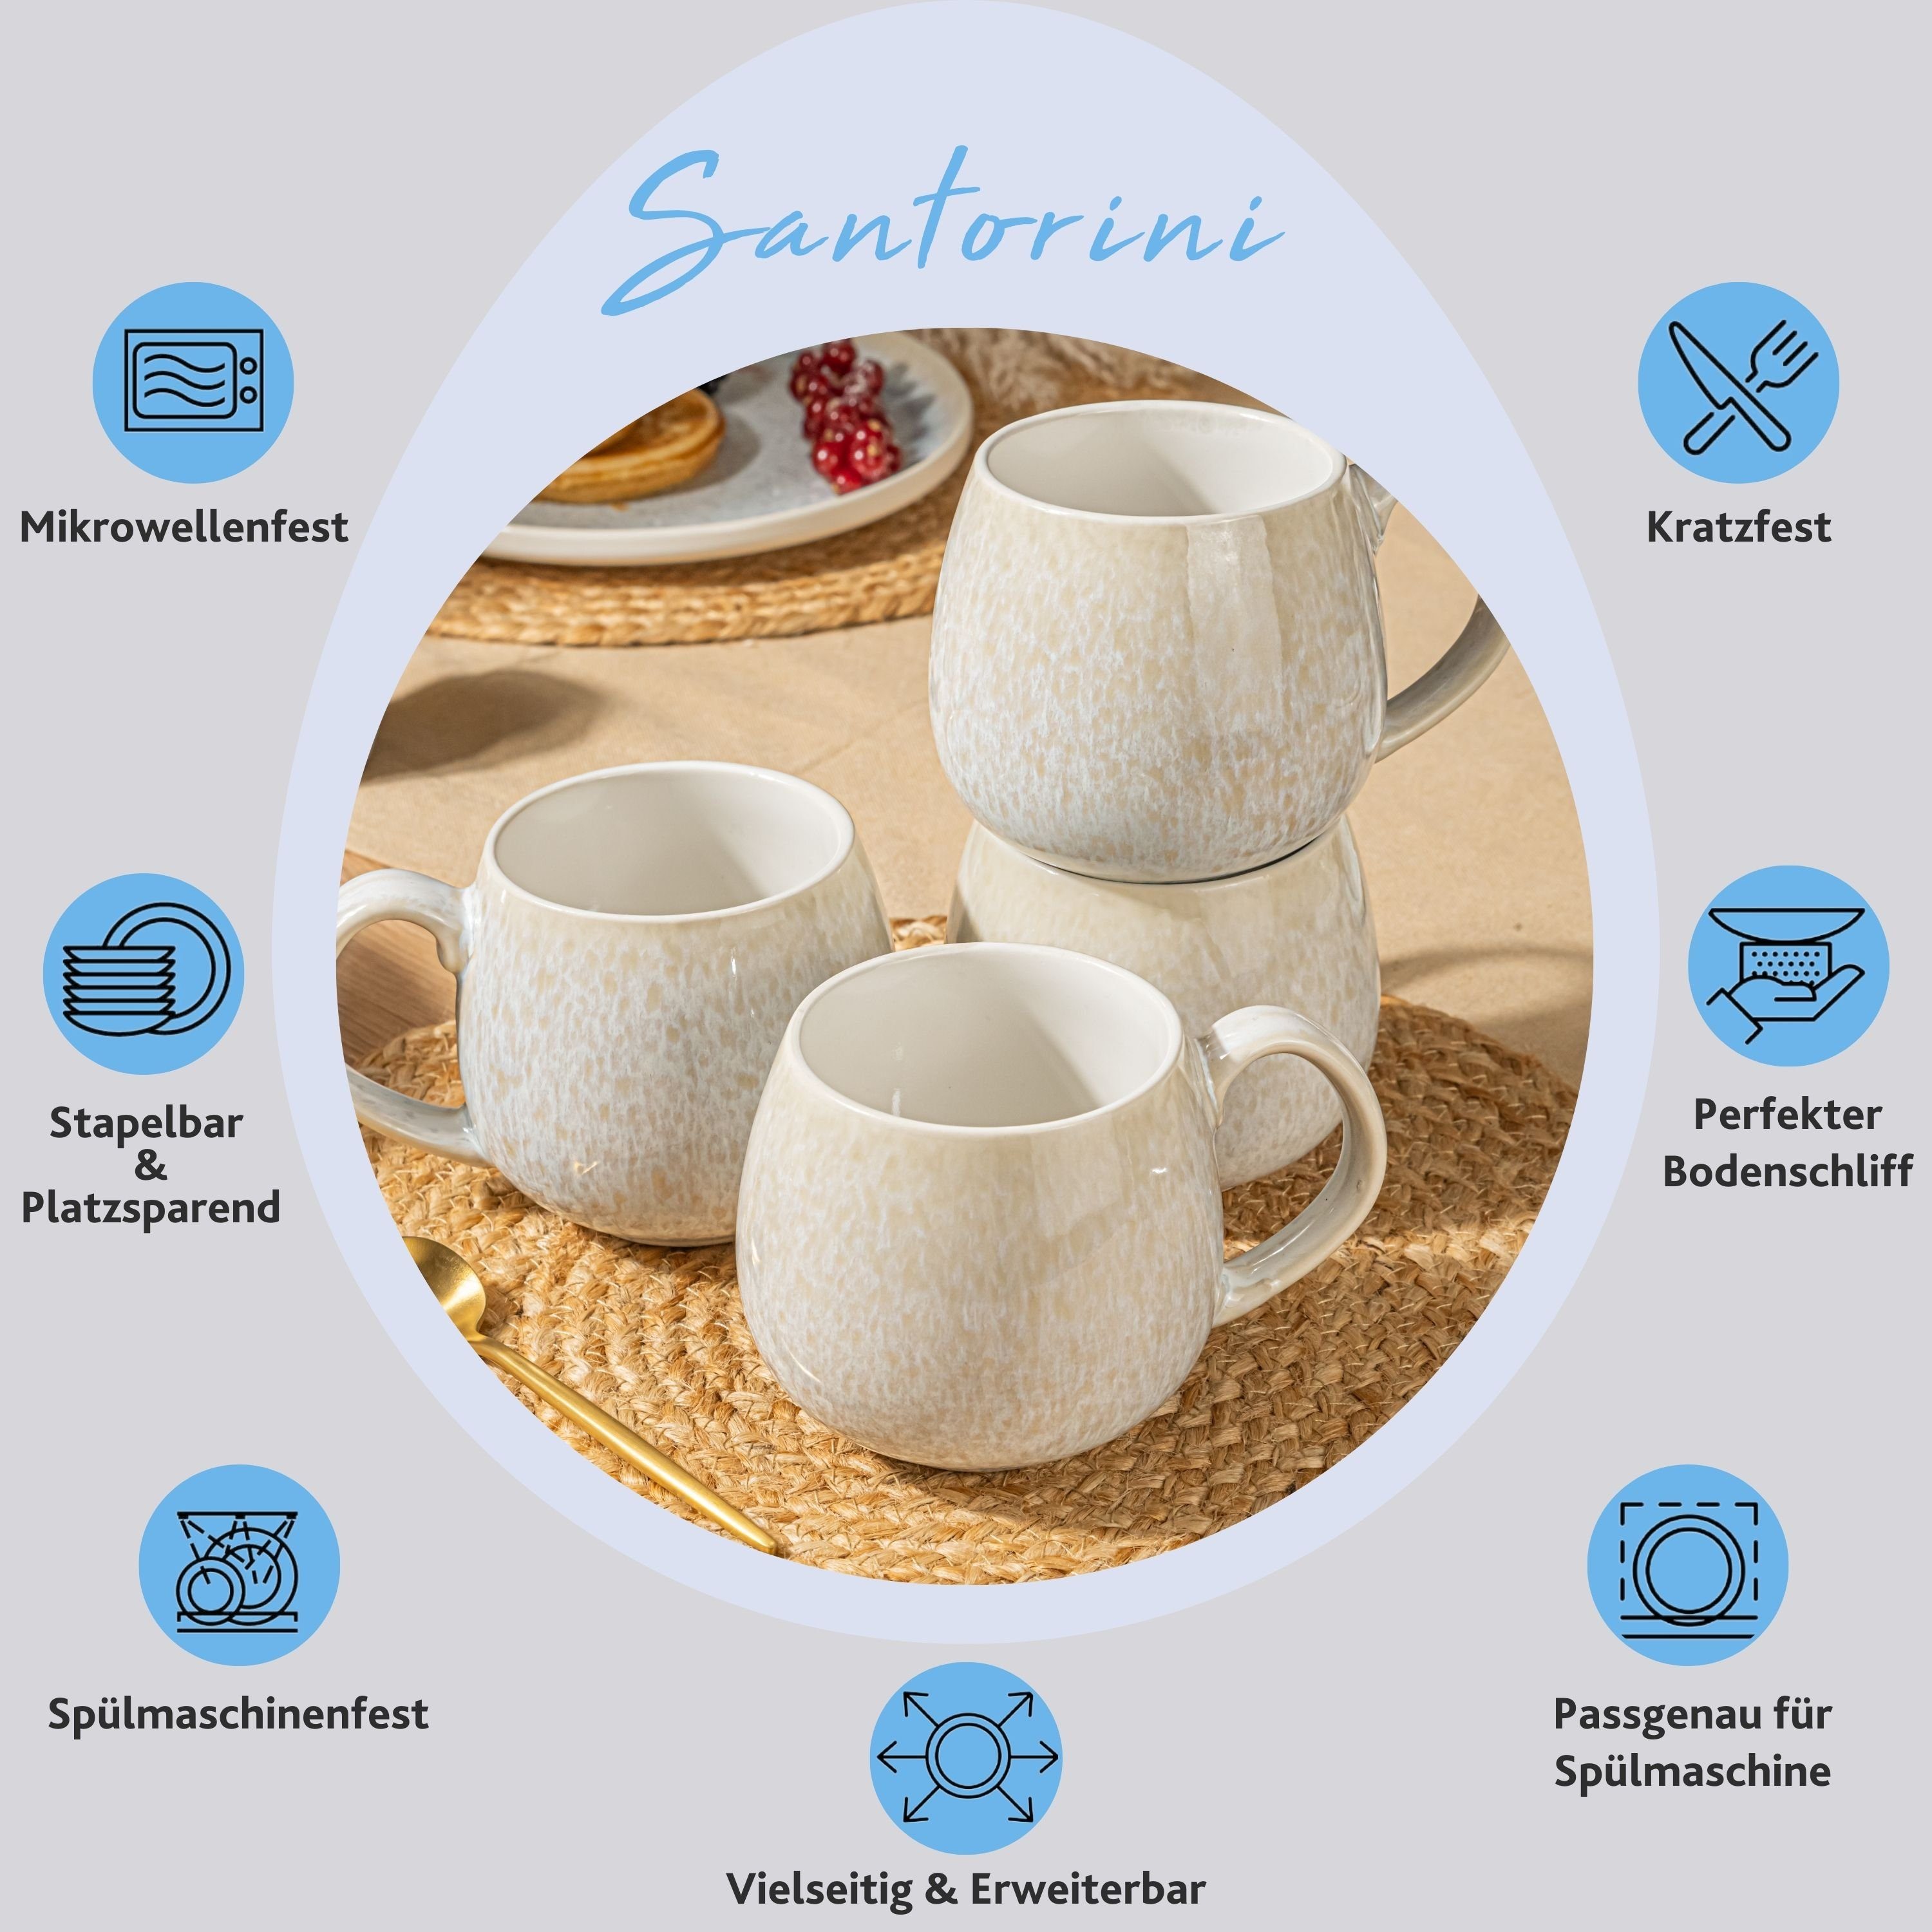 Santorini mit Kaffeebecher Steingut, Cremefarben (4-teilig), Set Blauem Flieder Verlauf, SÄNGER Becher Handmade